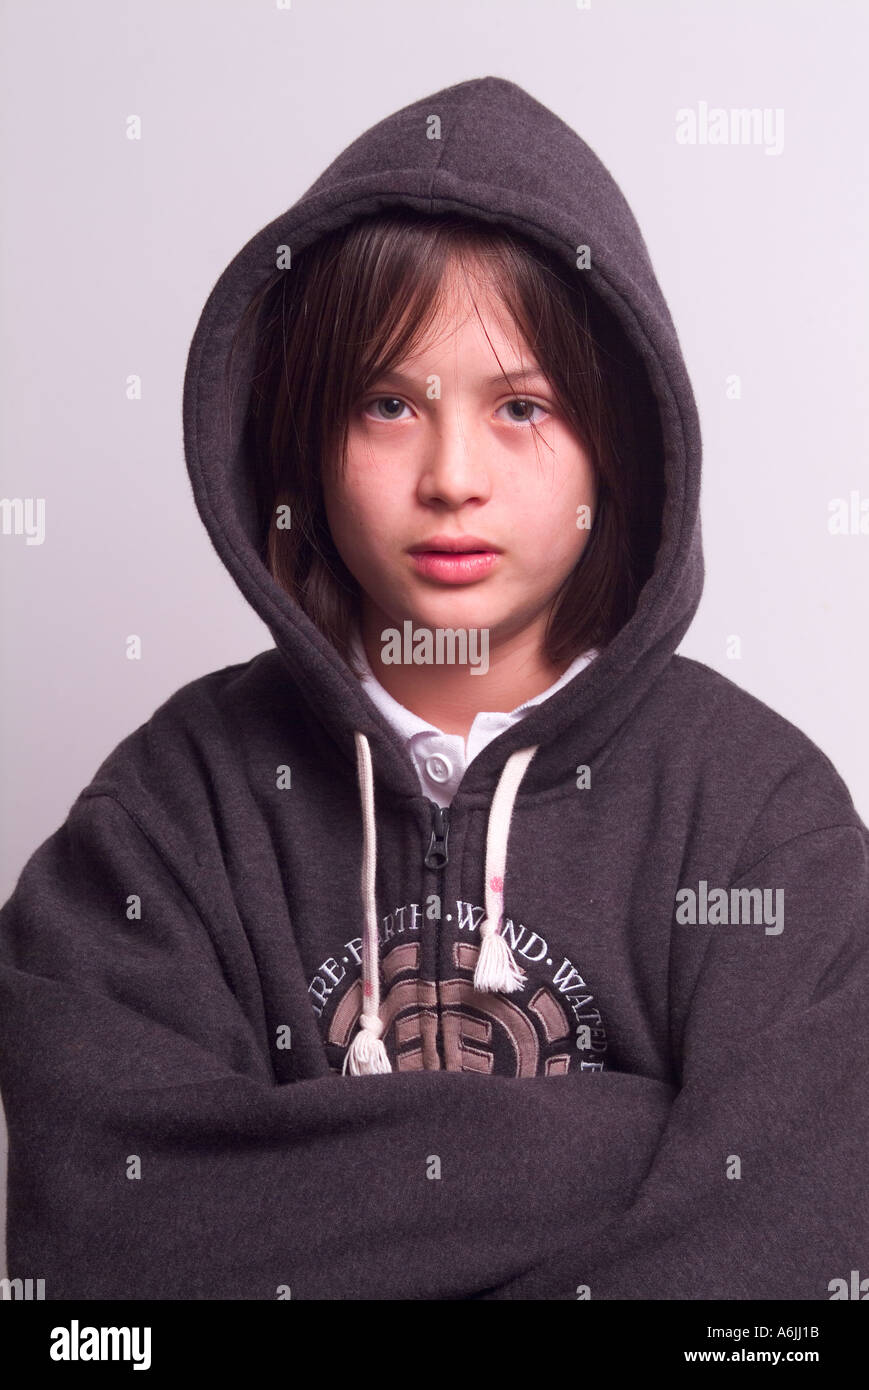 Guapo joven de 12 años de edad con una sudadera con capucha